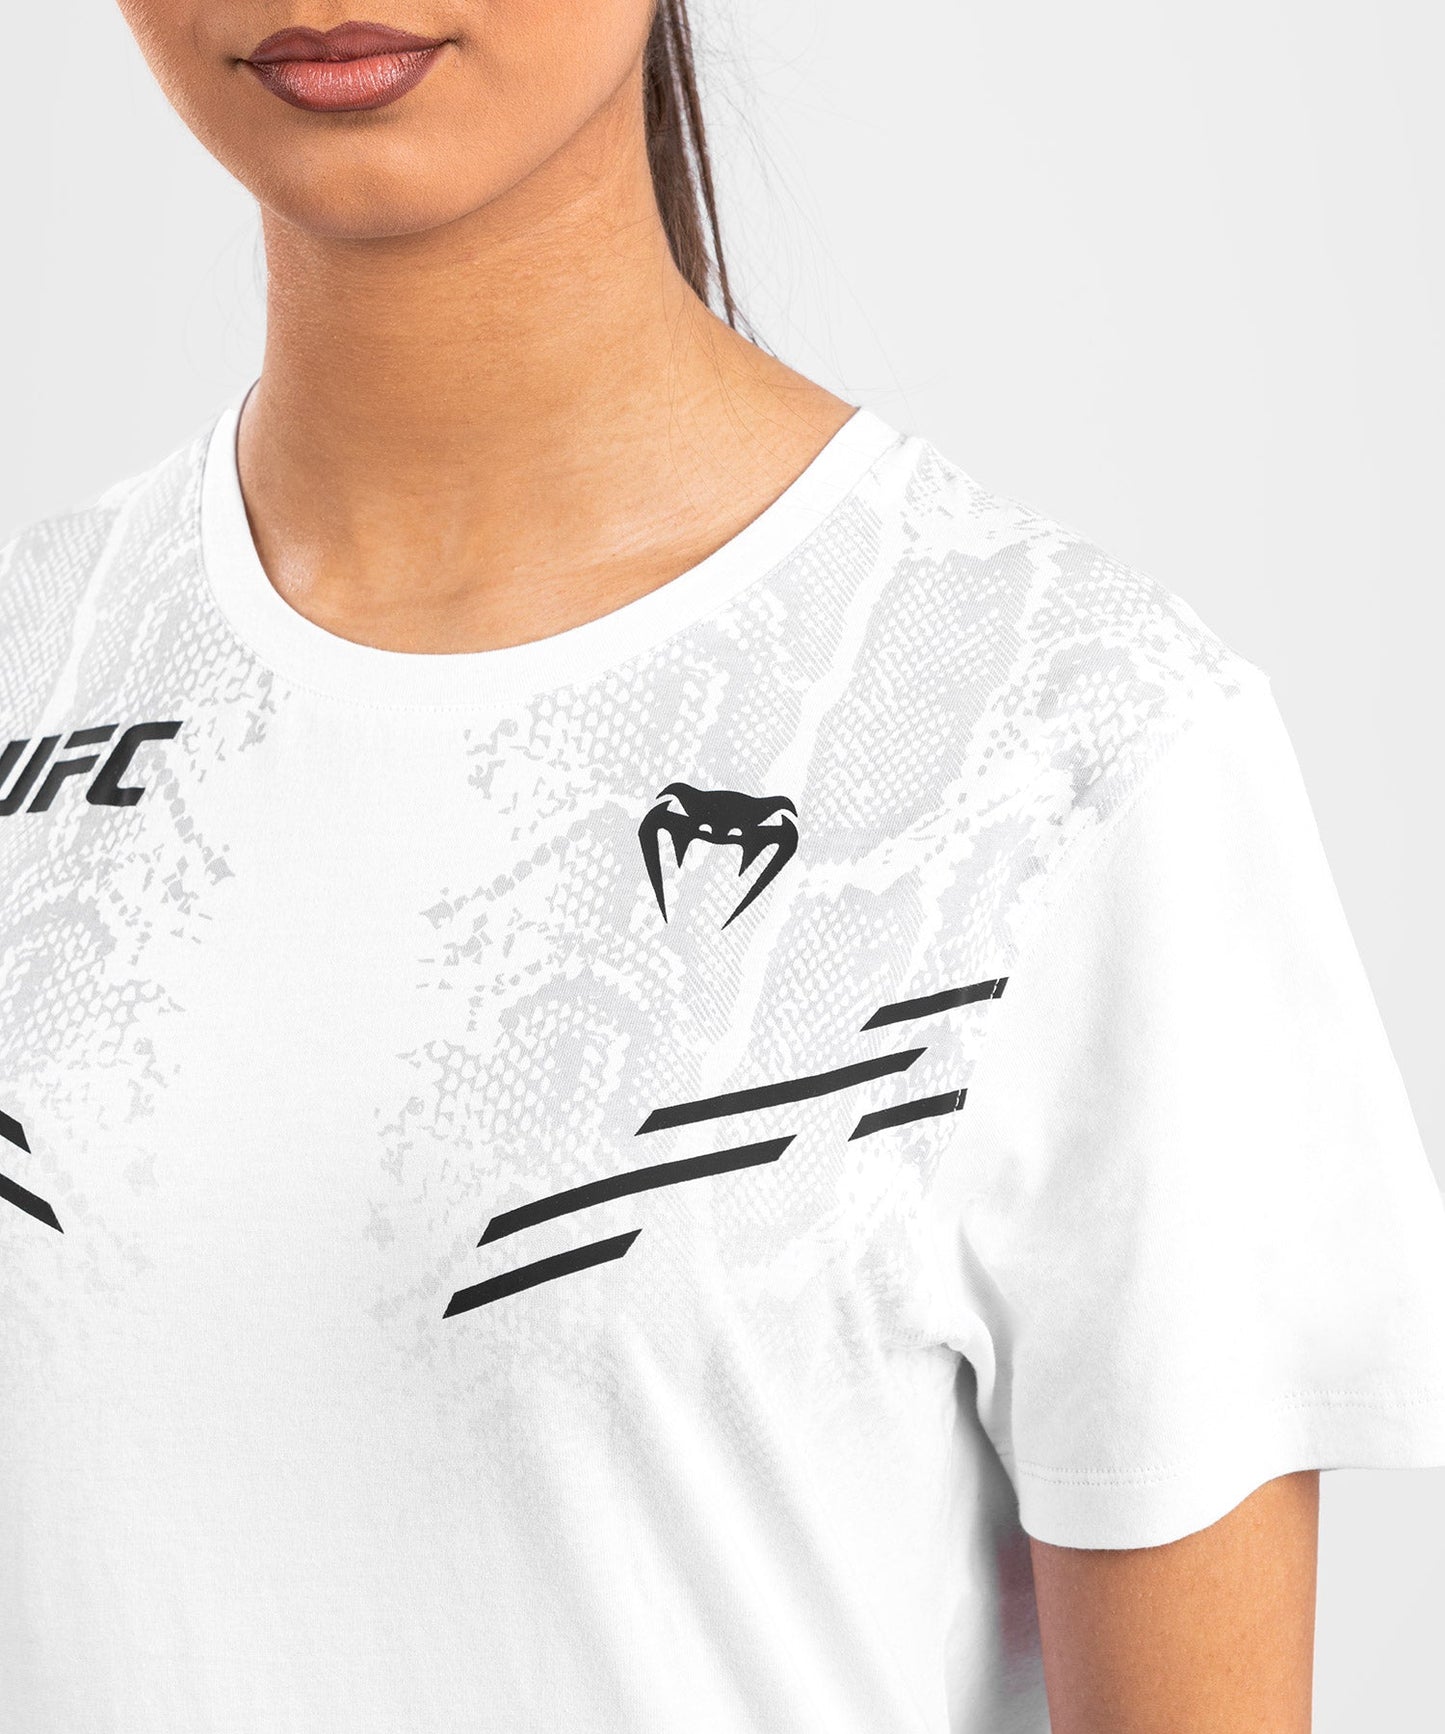 UFC Adrenaline by Venum Replica Kurzarm-T-Shirt für Frauen - Weiß